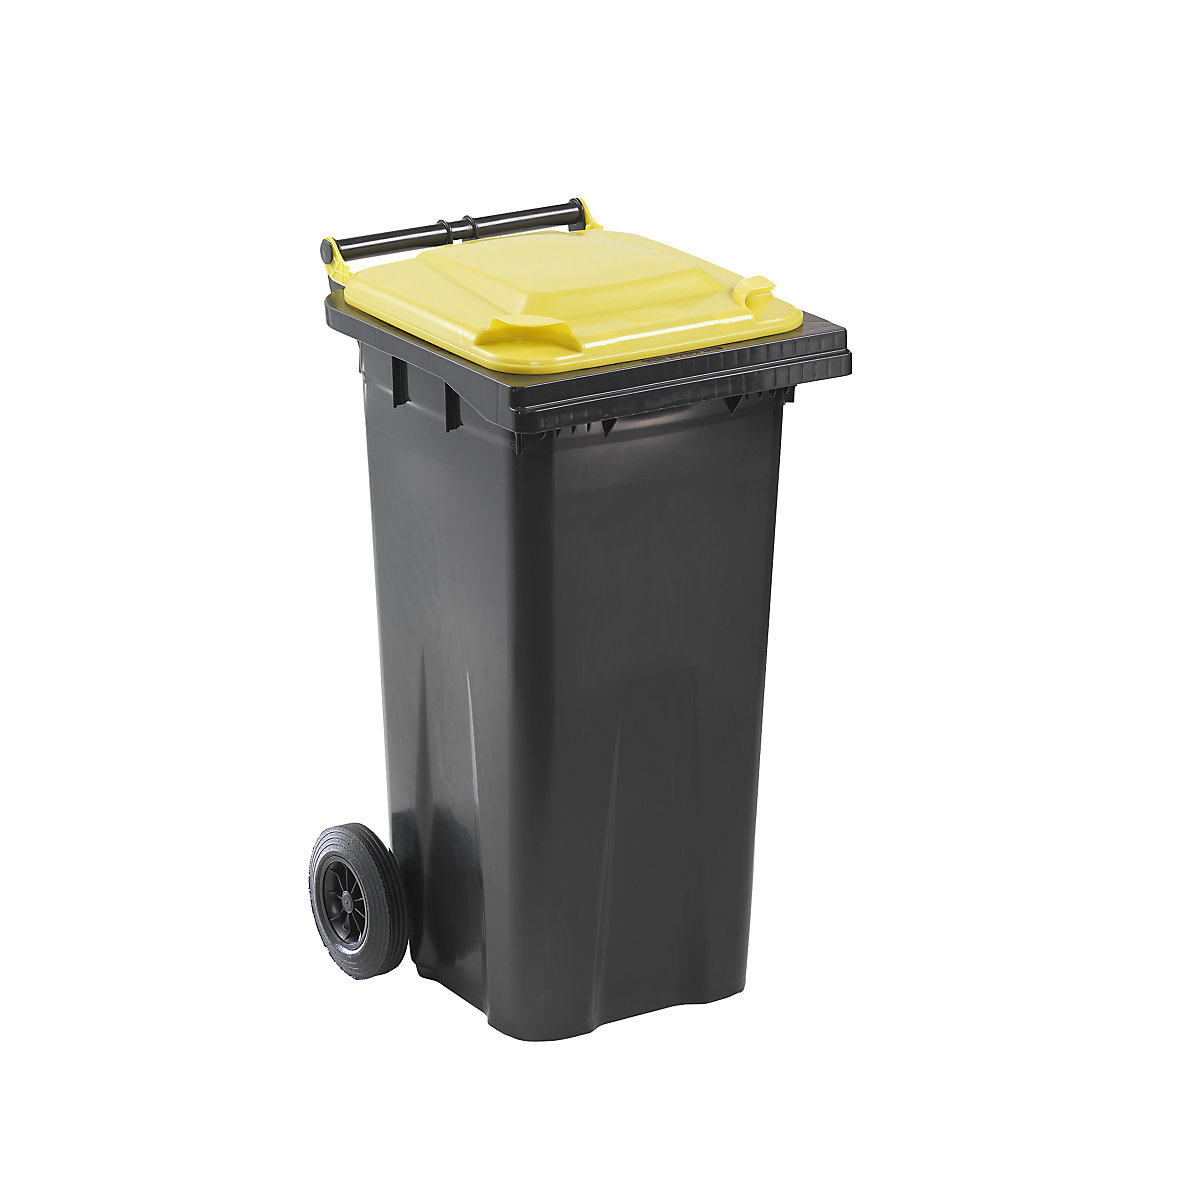 Nádoba na odpad podle ČSN EN 840, objem 120 l, š x v x h 505 x 1005 x 555 mm, antracitová, víko žluté